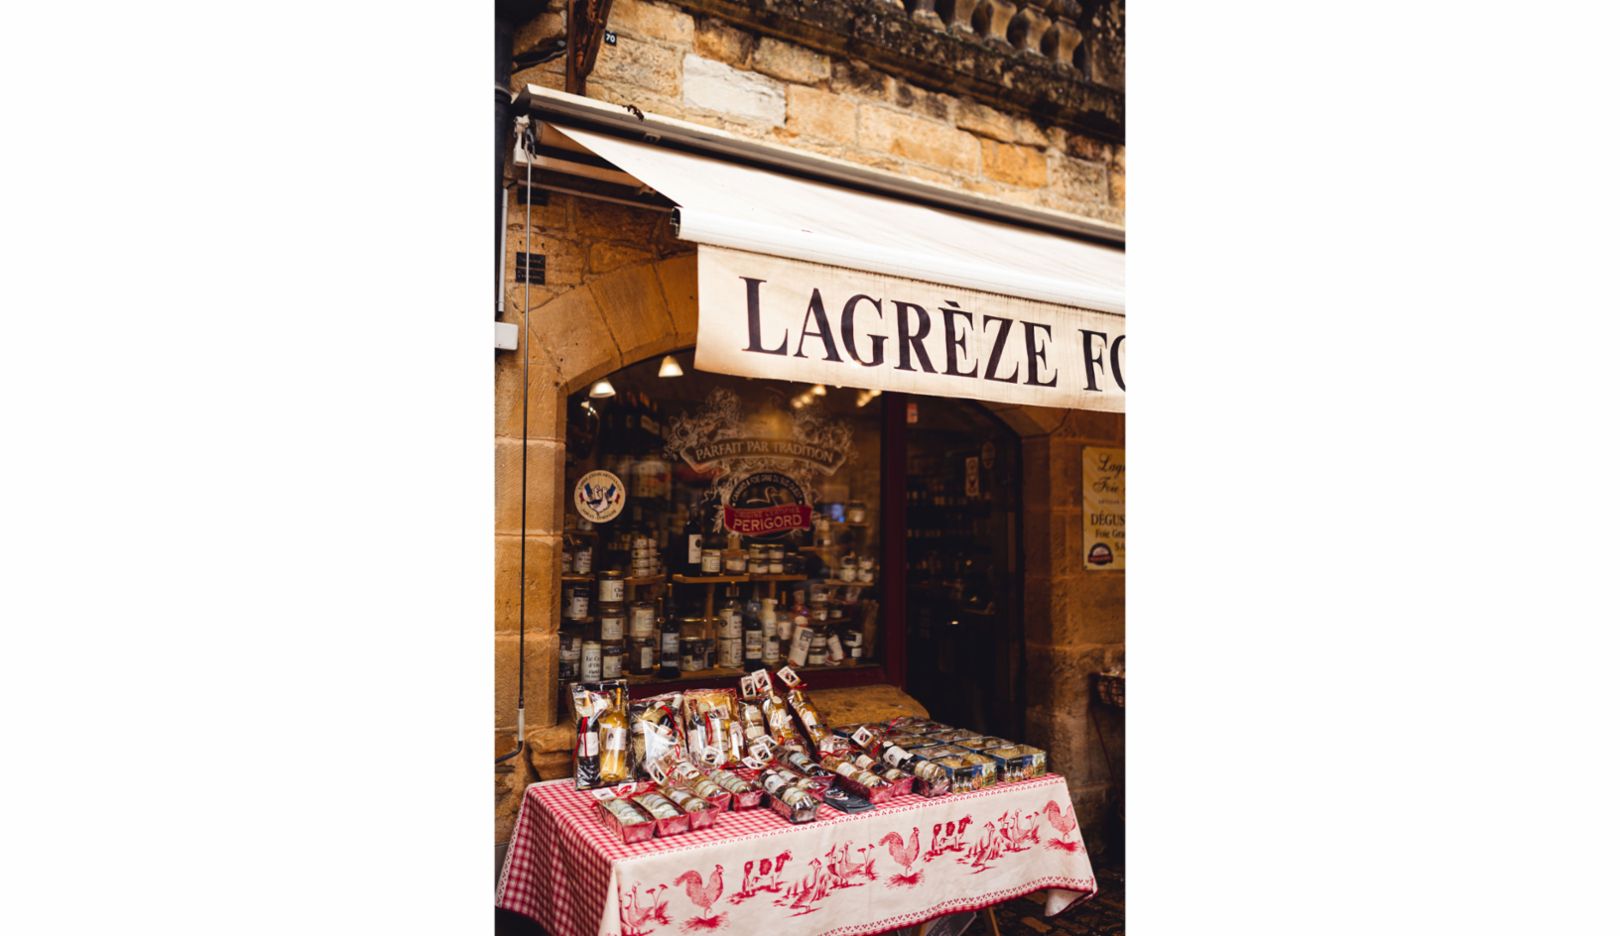 Regionale Kost gibt es in Sarlat nicht nur auf dem Markt, sondern auch in den zahlreichen kleinen Läden mit typisch französischem Flair.